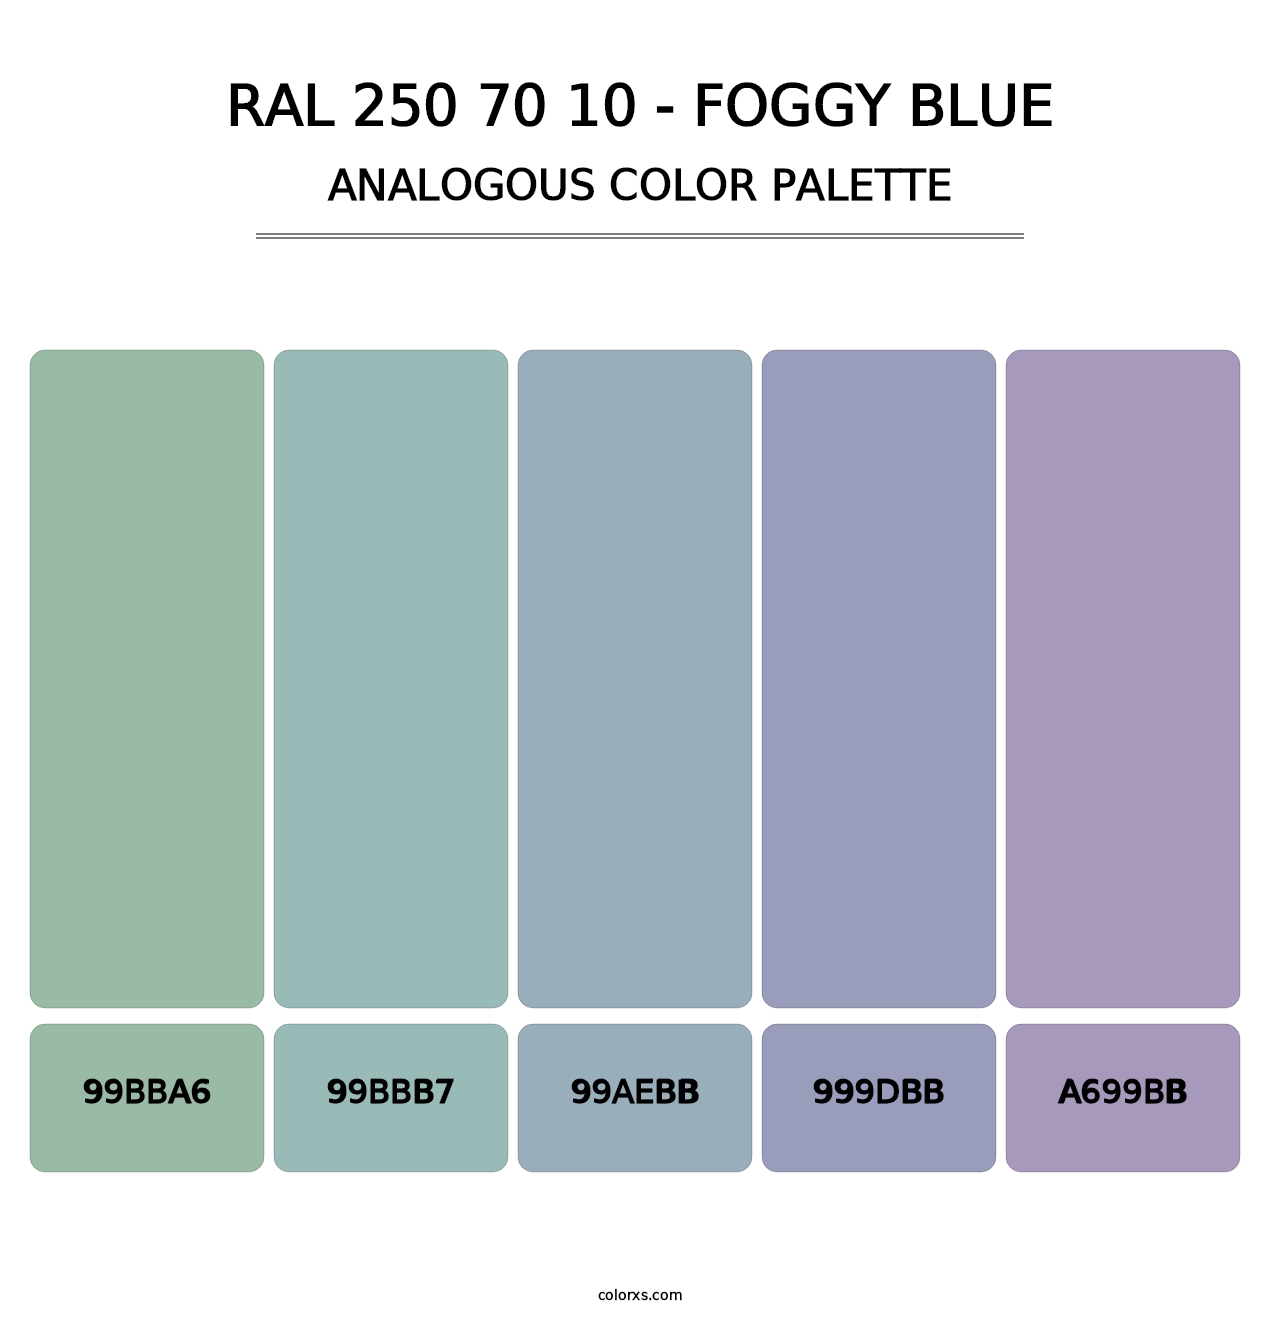 RAL 250 70 10 - Foggy Blue - Analogous Color Palette